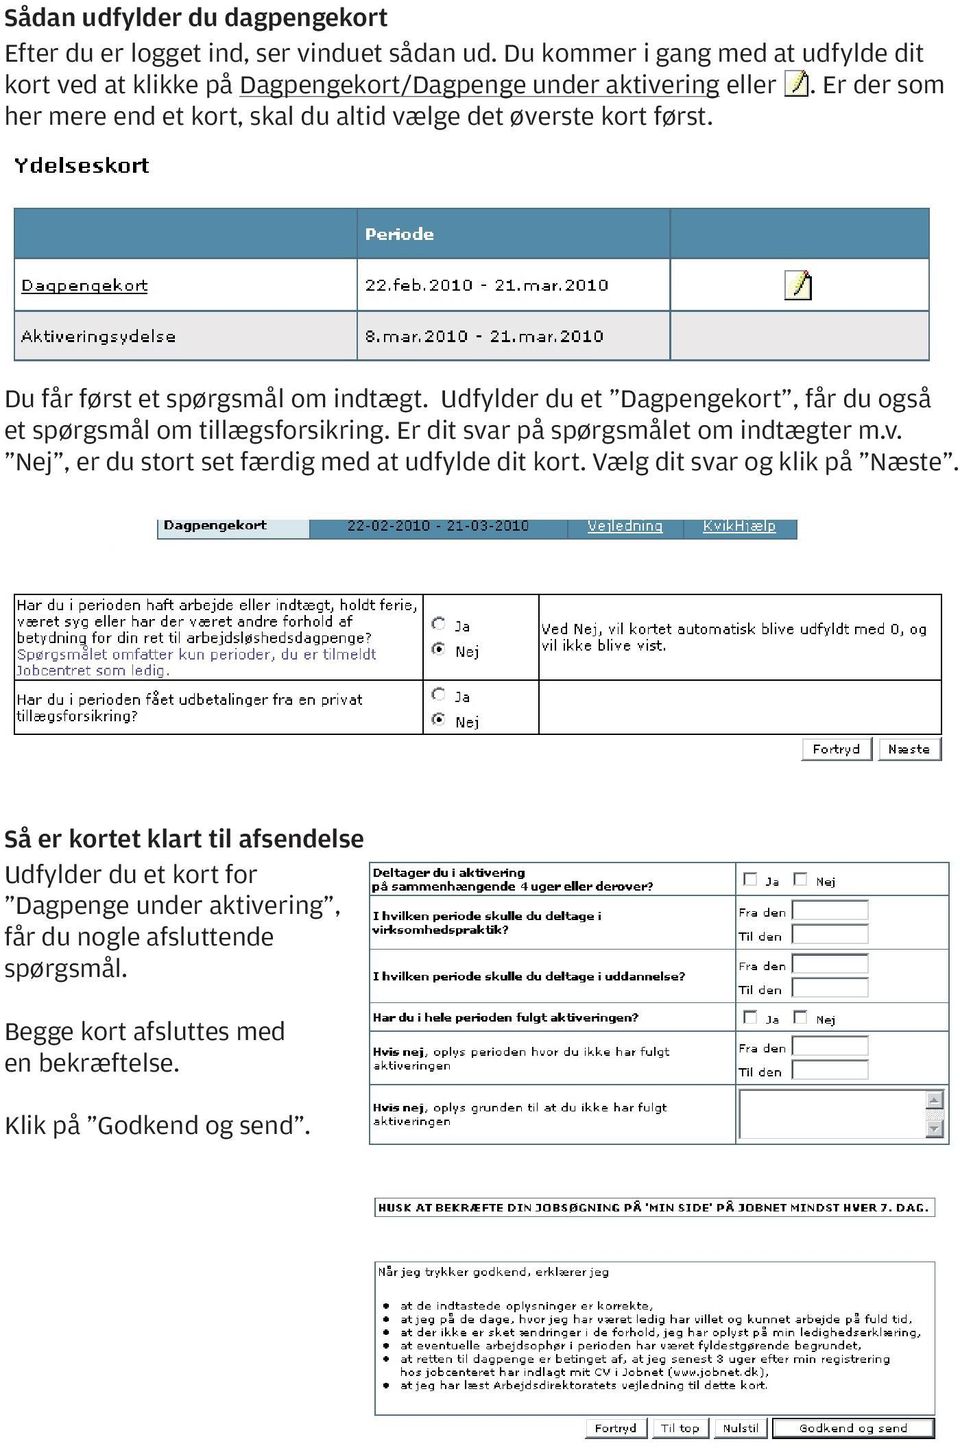 Sådan bruger du Business Danmarks NetKasse. Dagpengekort og Dagpenge under  aktivering i 4 uger eller mere - PDF Free Download